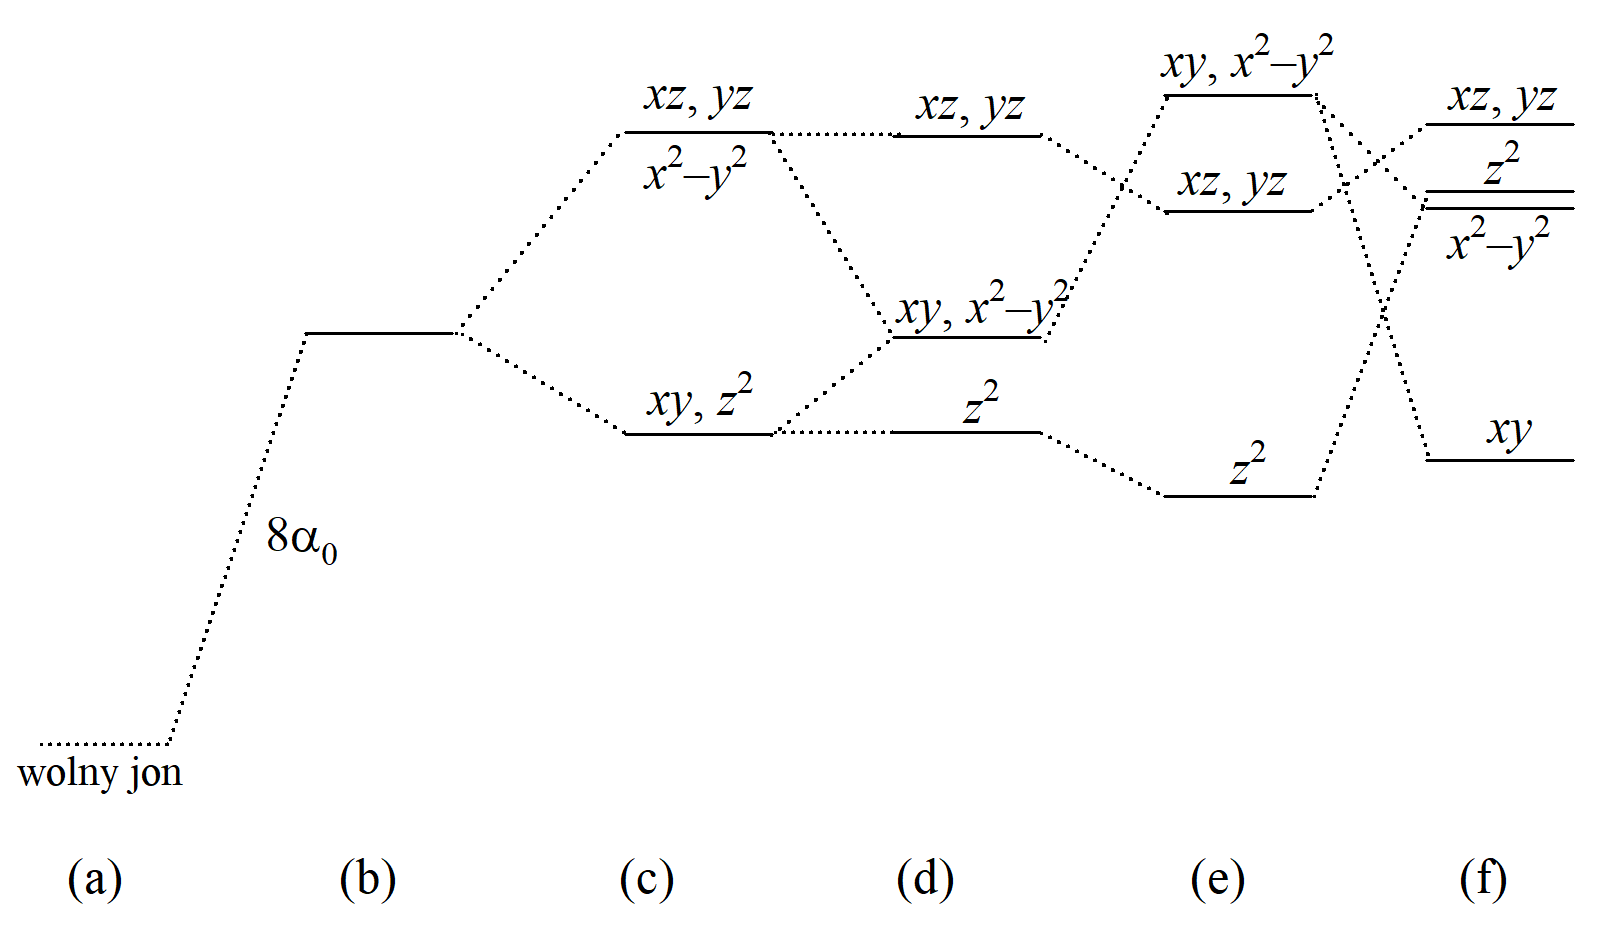 Diagram rozszczepienia orbitali d w różnych polach ośmiokoordynacyjnych: (a) wolny jon, (b) sferycznie zaburzony poziom d, (c) sześcian (Oh), (d) sześcian zdeformowany tetragonalnie (D4d), (e) antypryzmat kwadratowy (D4d), (f) dodekaedr (D2d).